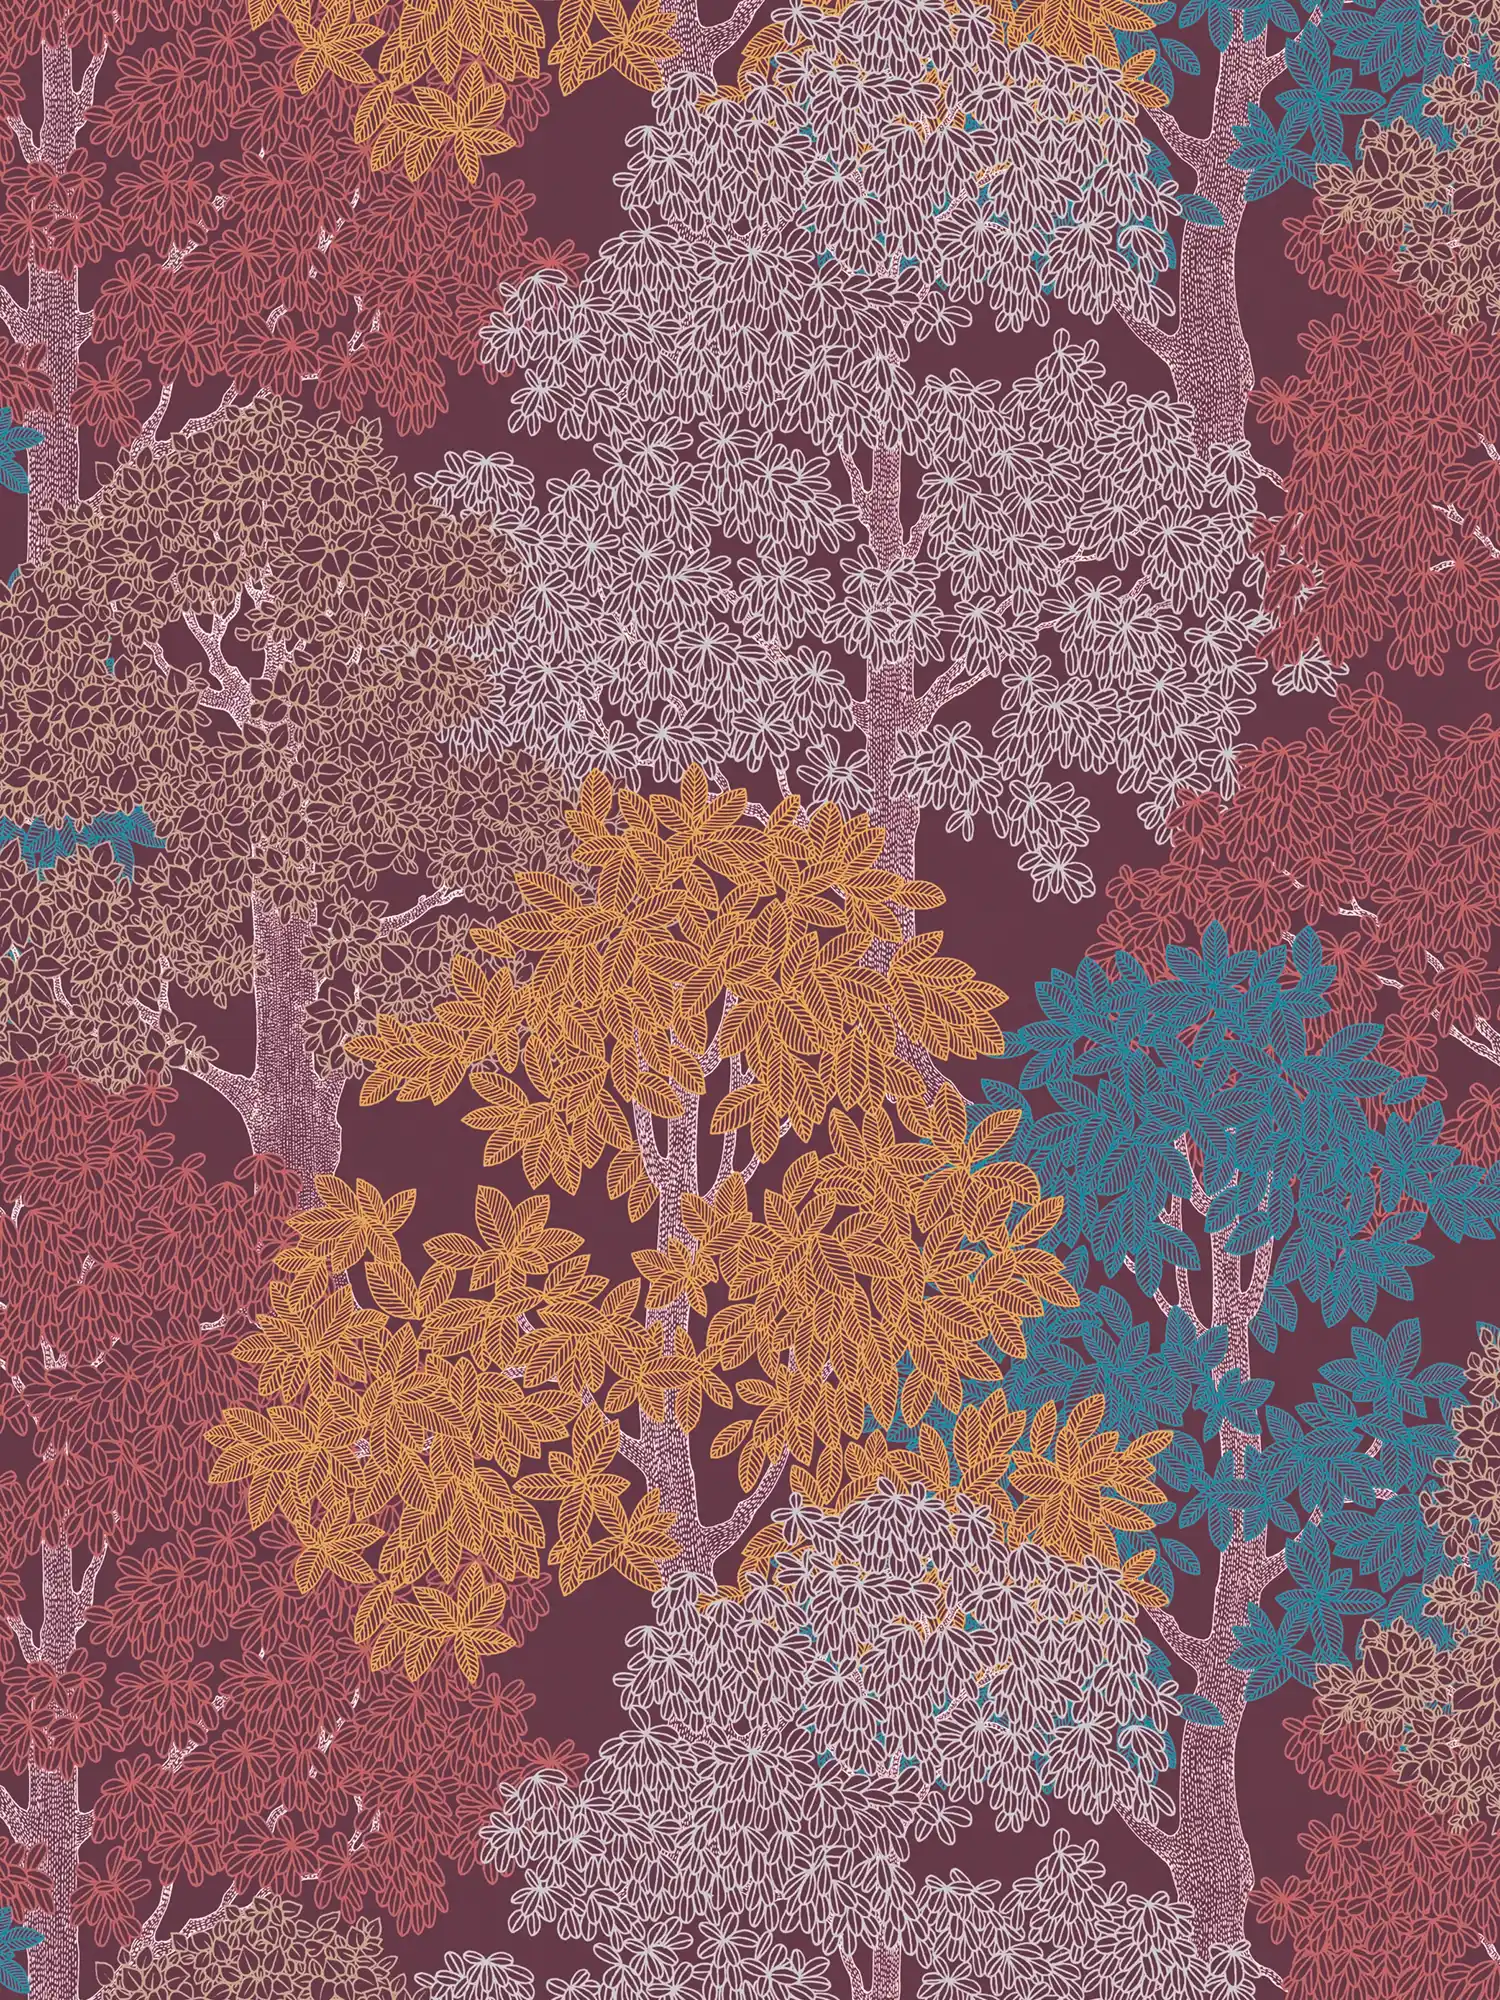             Tapete Weinrot mit Wald Muster & Bäumen im Zeichenstil – Lila, Rot, Gelb
        